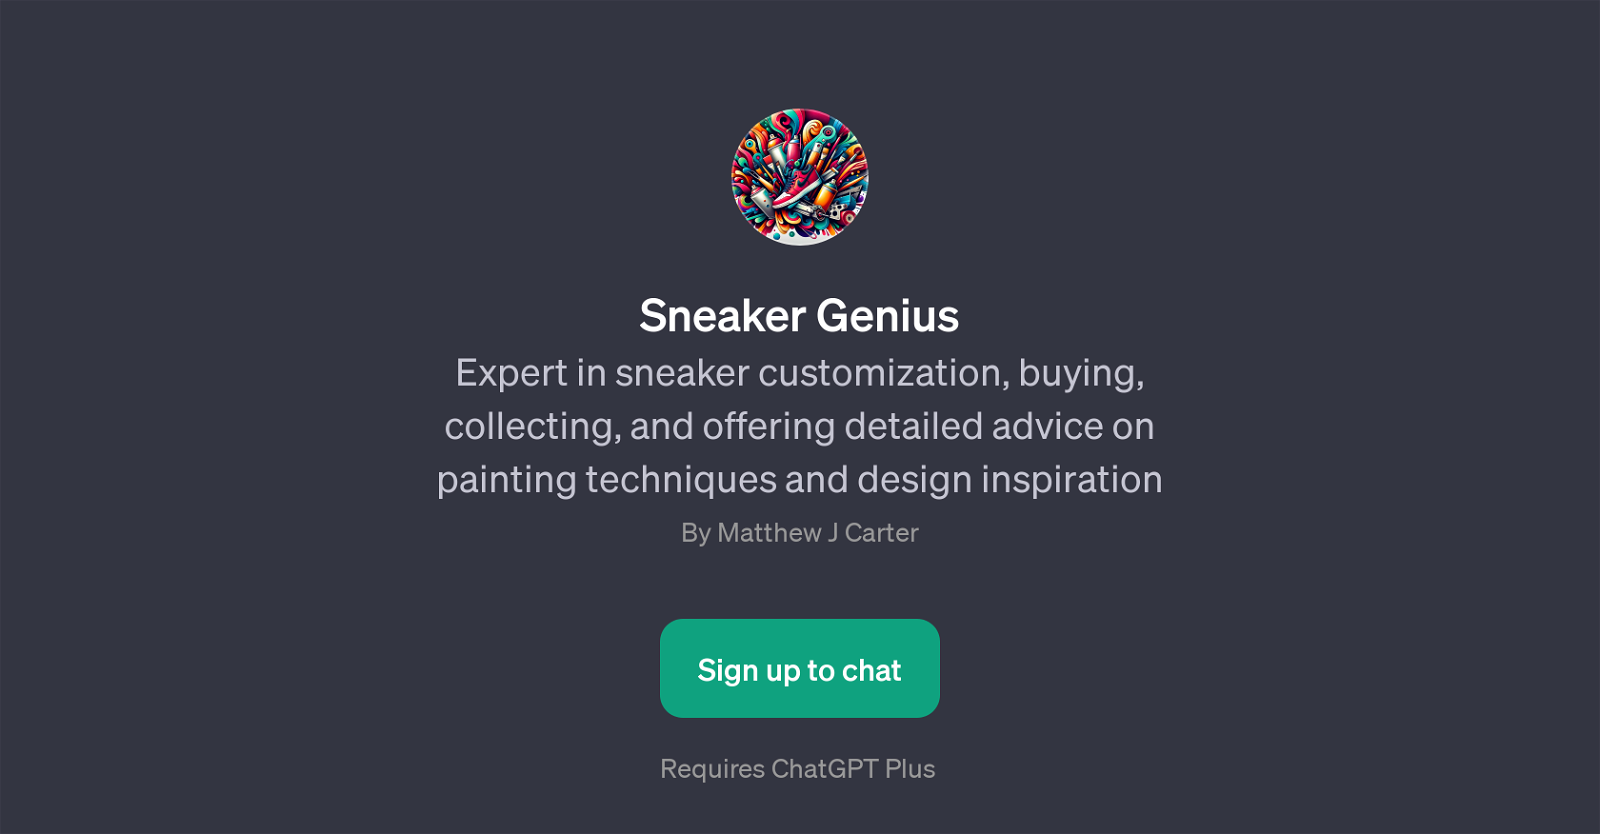 Sneaker Genius website